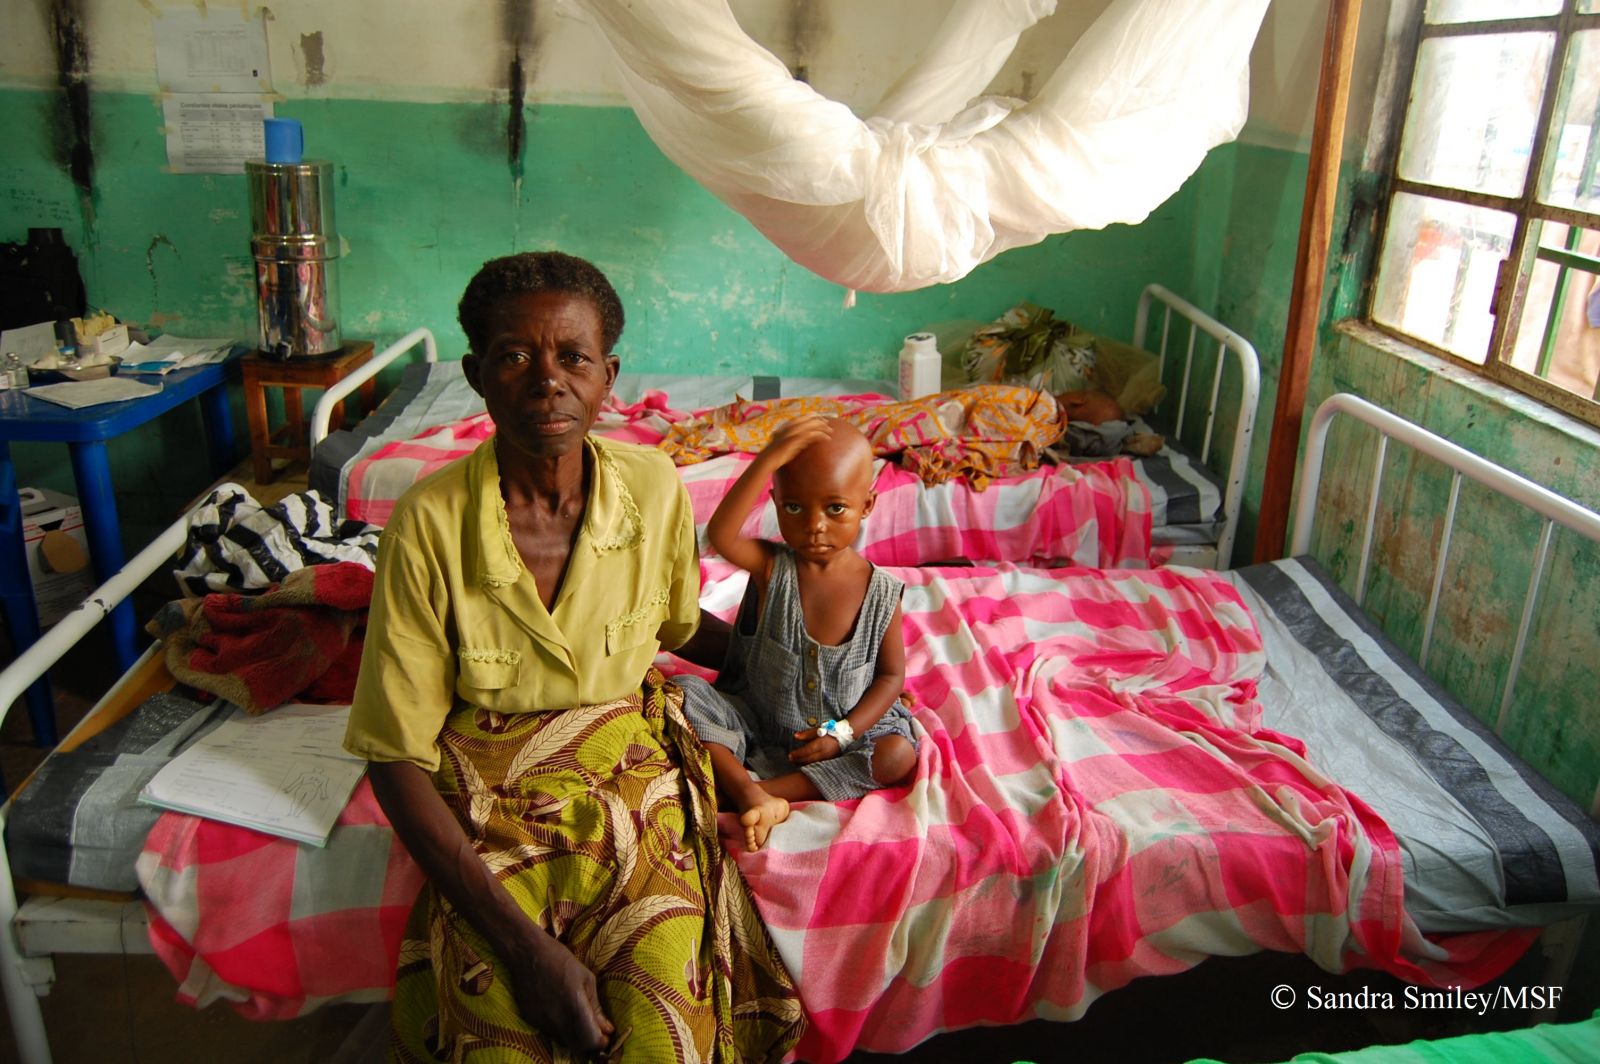 국경없는의사회가 지원하는 카탕카 지역의 병원에서 말라리아 치료를 받고 있는 환자